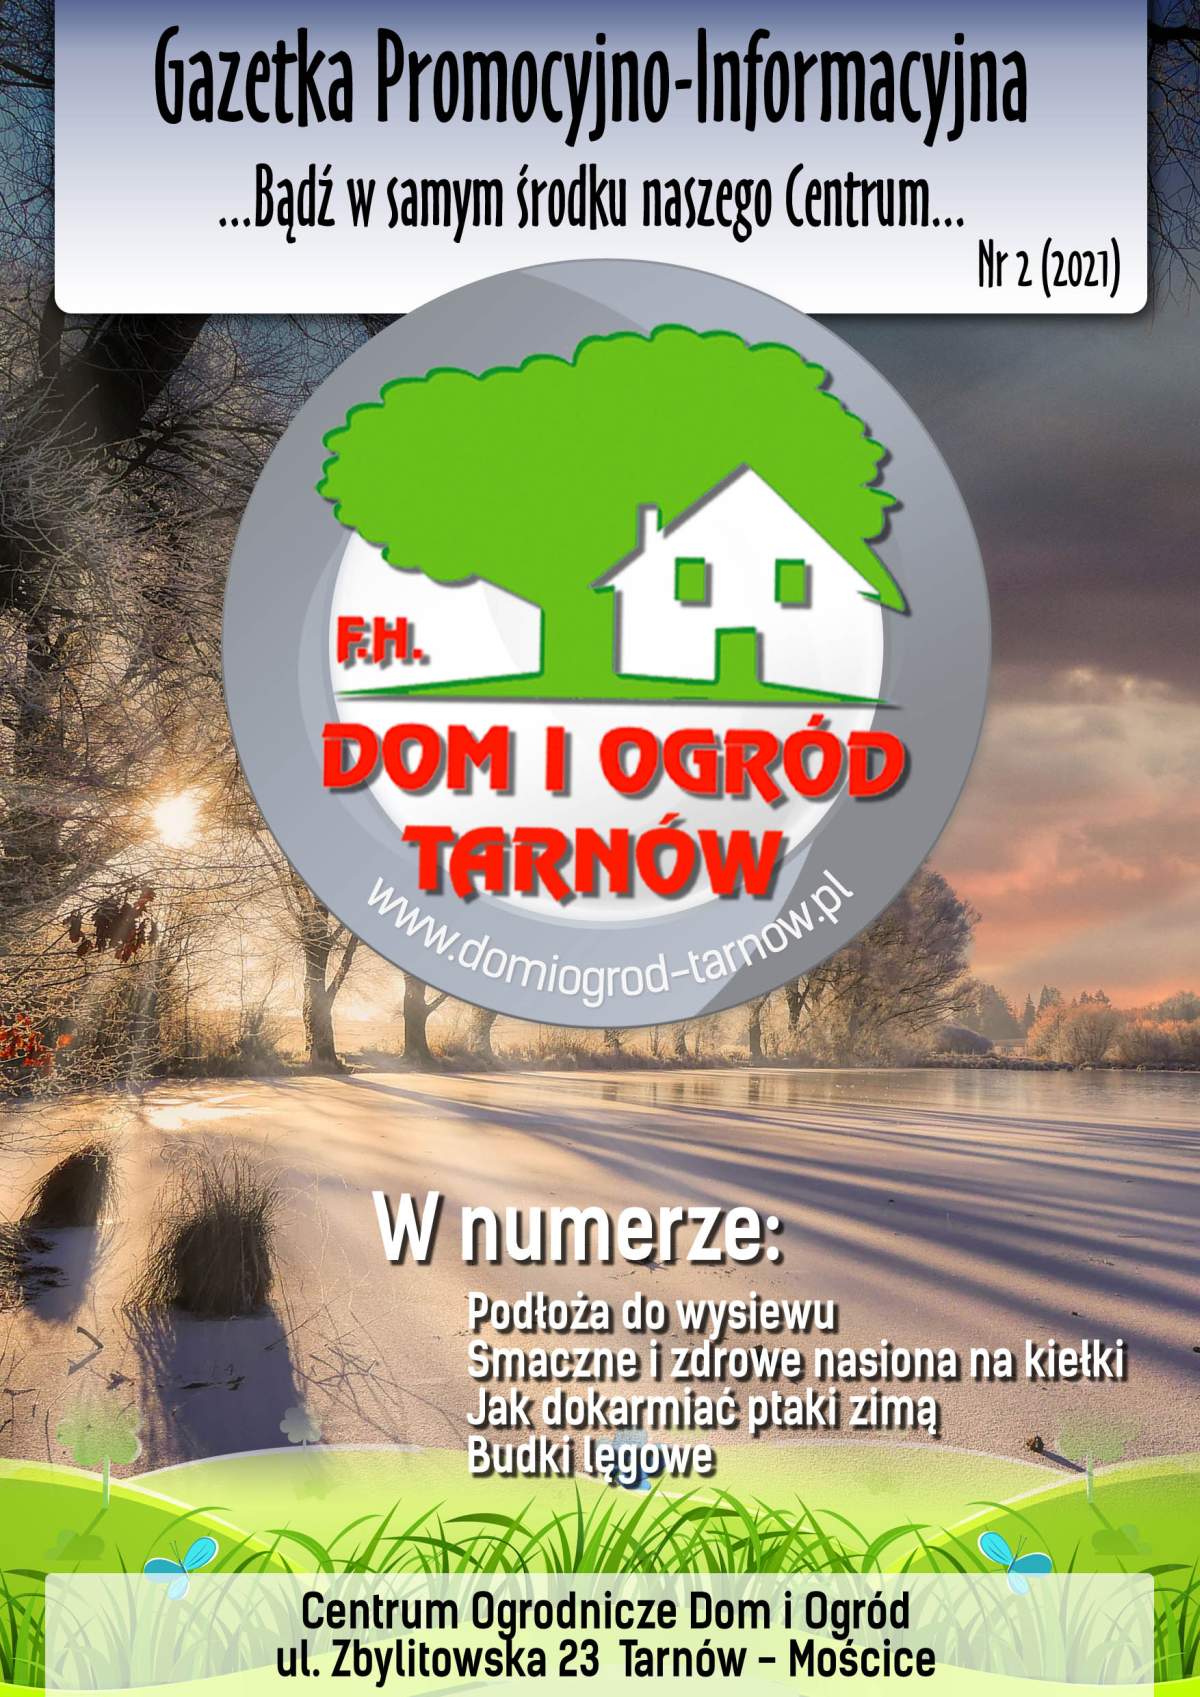 Gazetka Promocyjno-Informacyjna - 02/2021